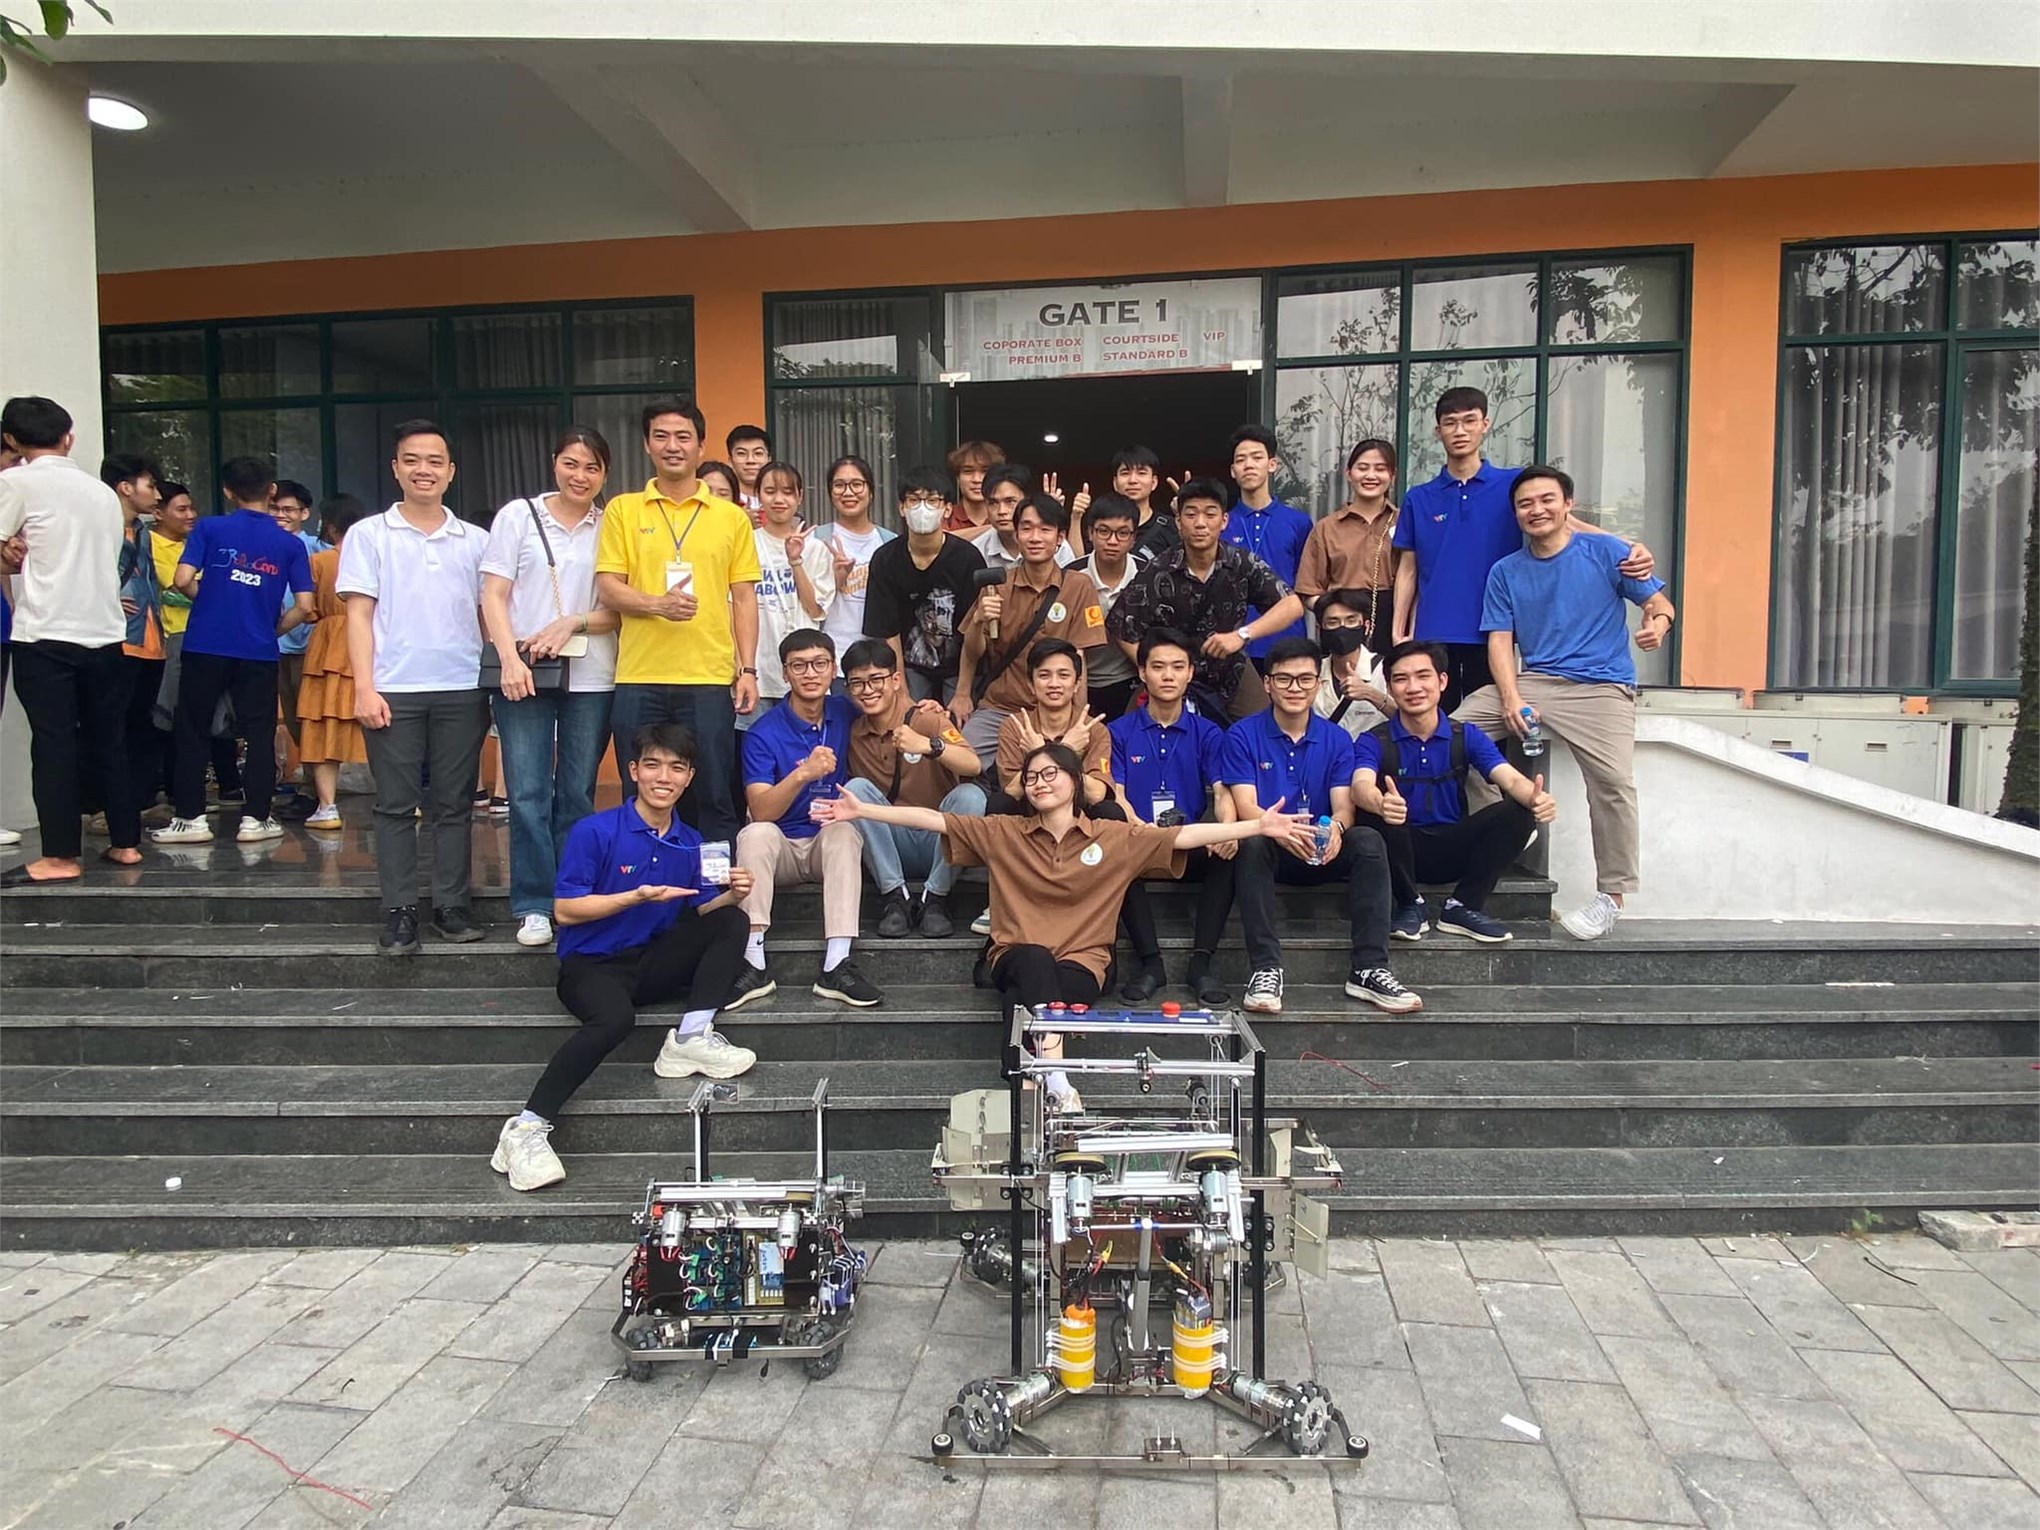 Đoàn Thanh niên – Hội Sinh viên trường ĐH Công nghiệp Hà Nội – Đồng hành cùng robocon 2023